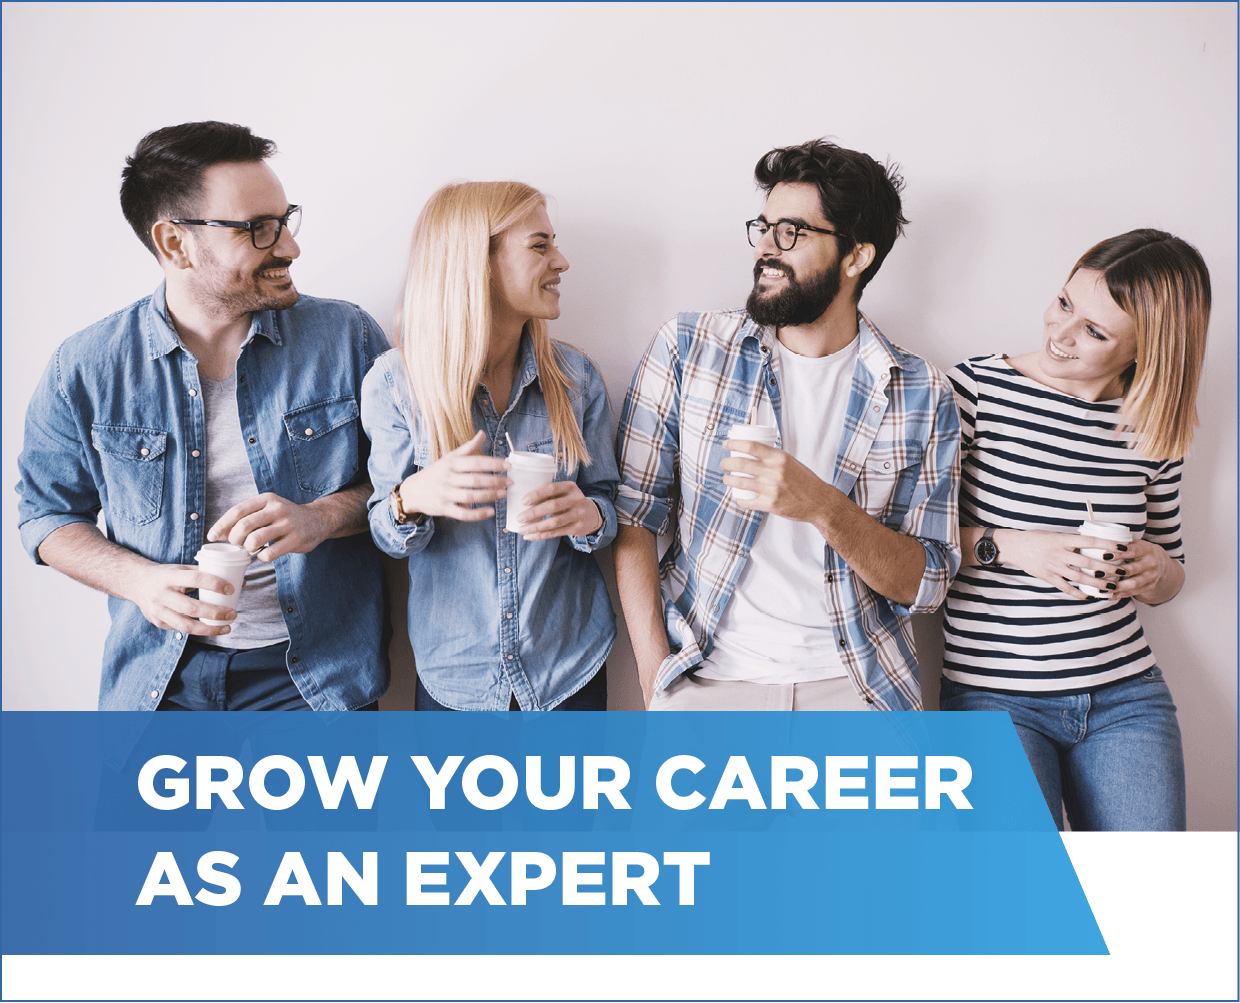 Grow your career as an expert